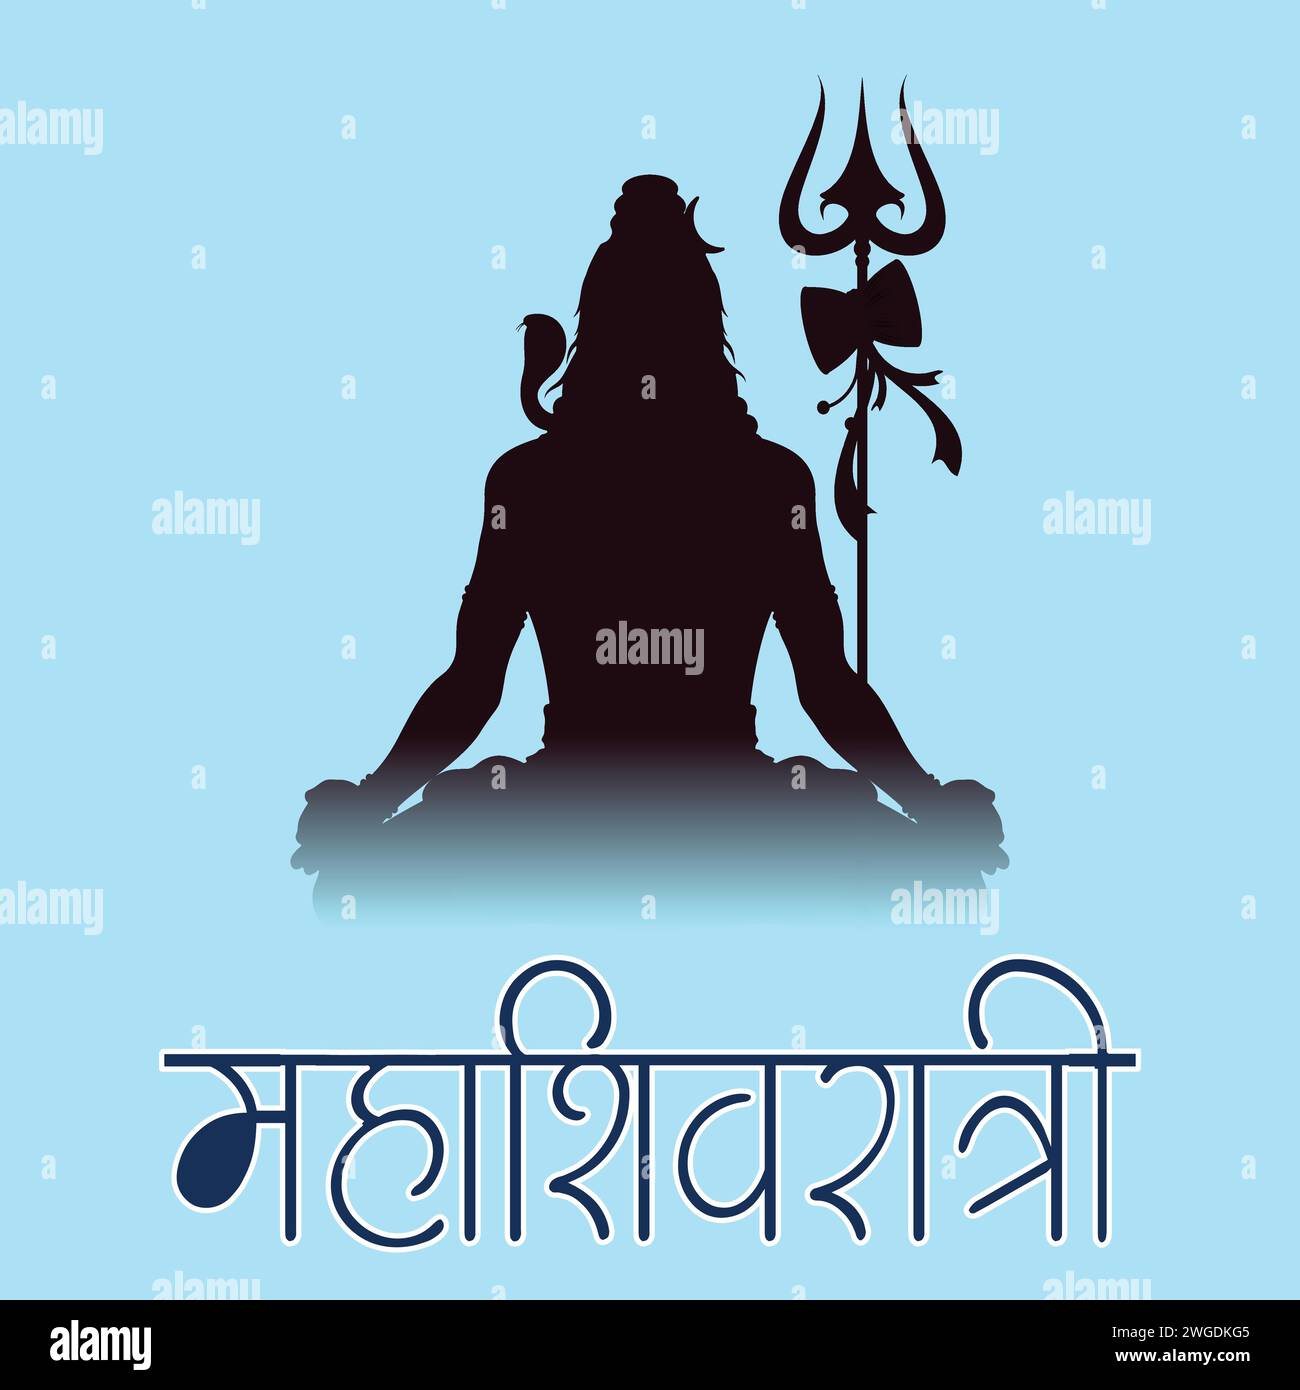 Vektor-Illustration des Maha Shivratri hindu Festivals Stock Vektor